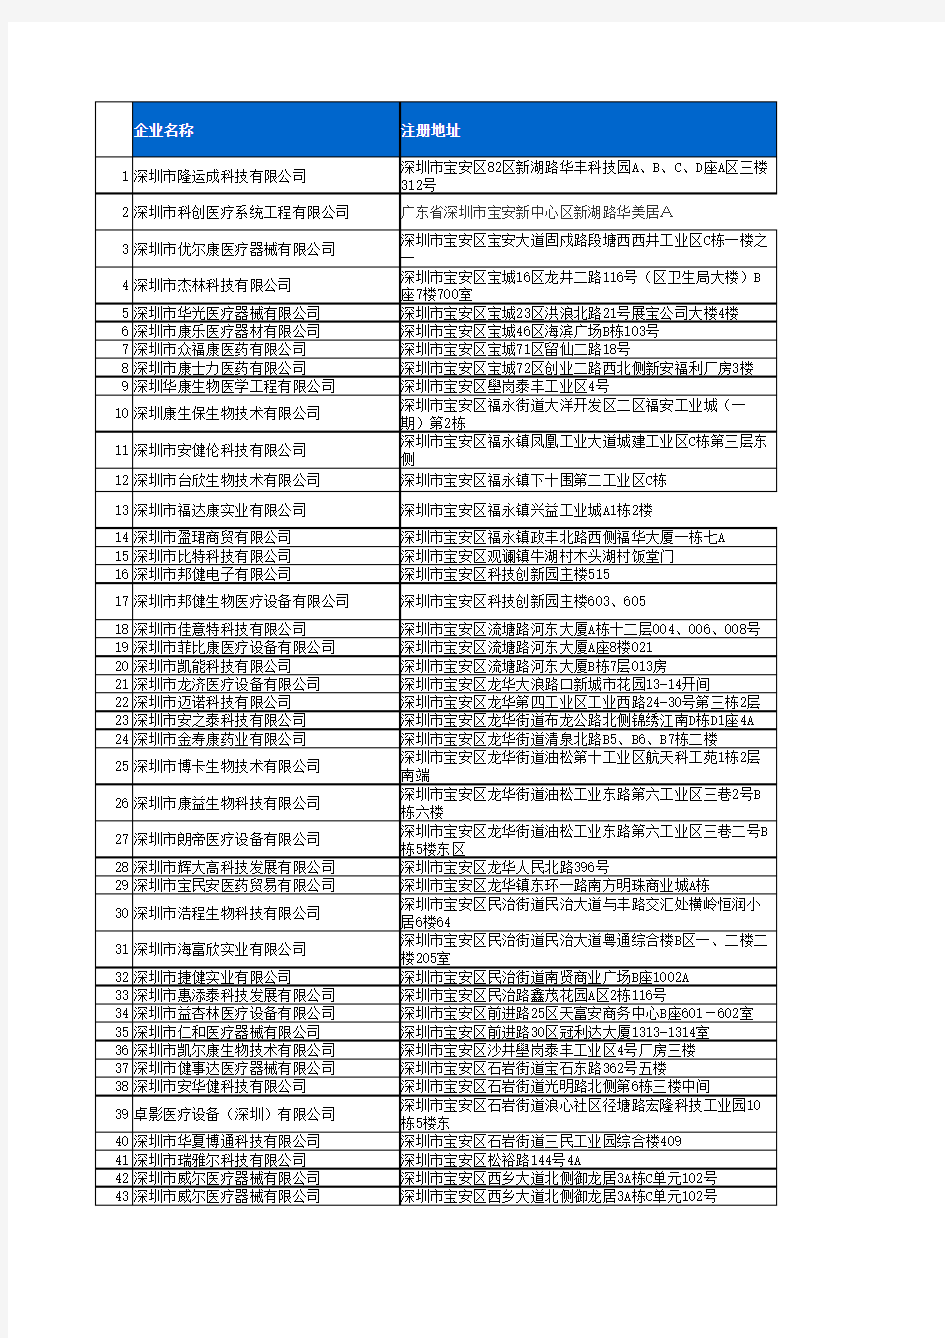 2013年最新深圳医疗器械公司名单